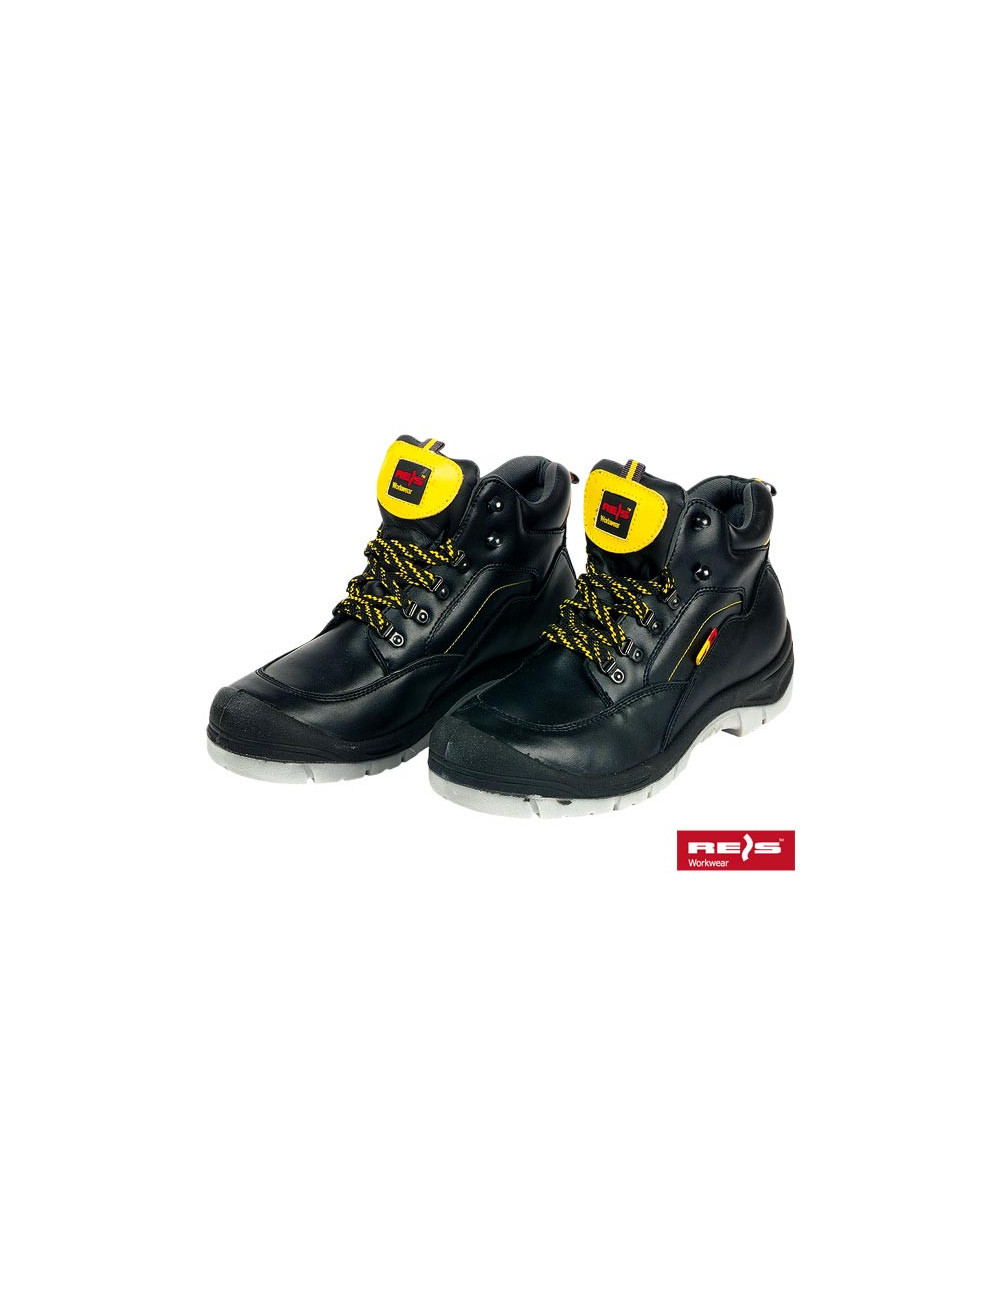 Buty bezpieczne brqan by czarno-żółty Reis